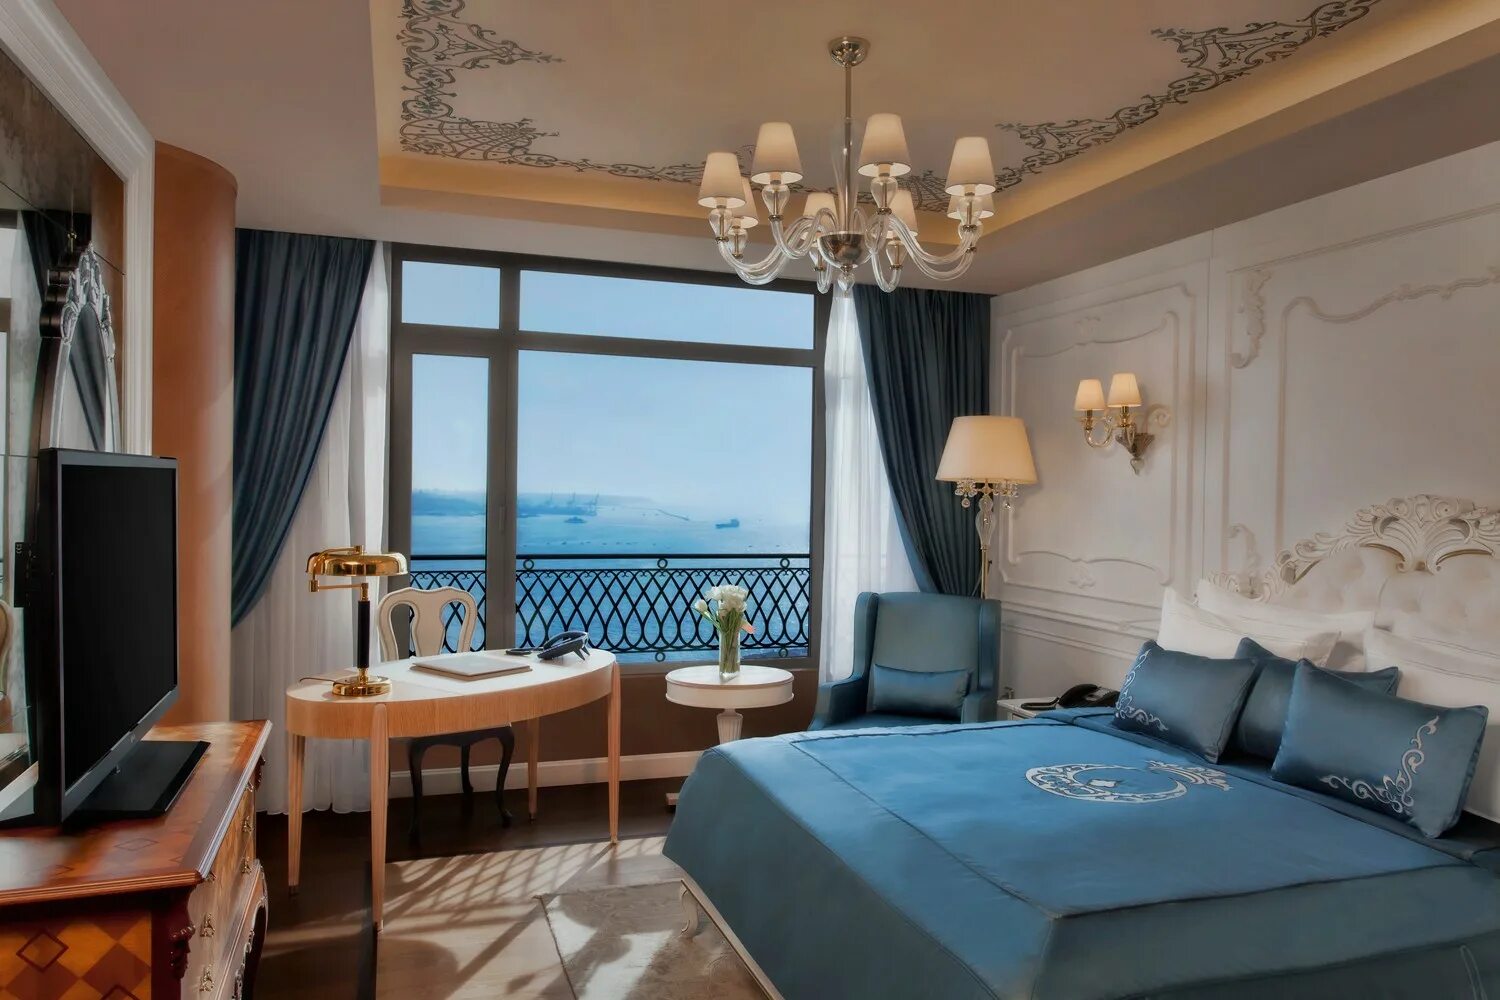 Сайт отелей стамбула. Босфорус отель Стамбул. CVK Park Bosphorus Hotel Istanbul. Отели Стамбула с видом на Босфор. Отель Пенинсула Стамбул Босфор.